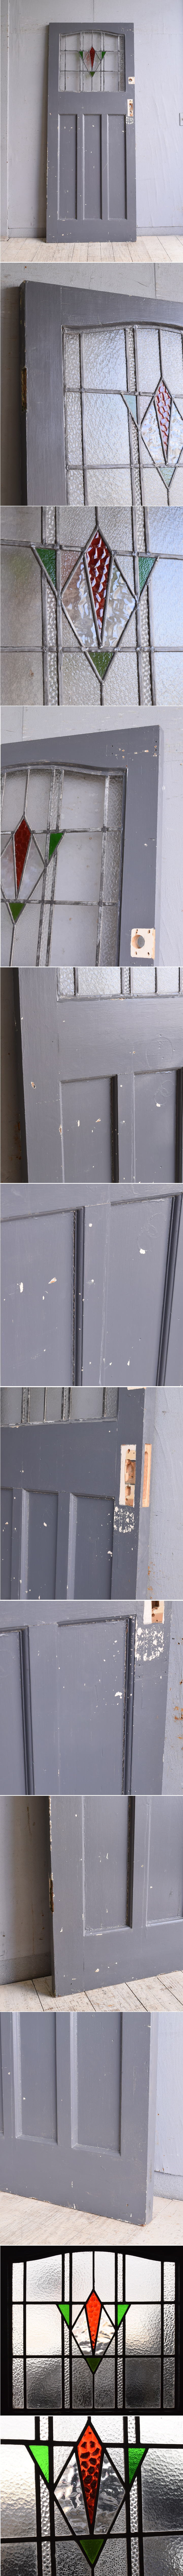 イギリス アンティーク ステンドグラス入り木製ドア 扉 建具 9780